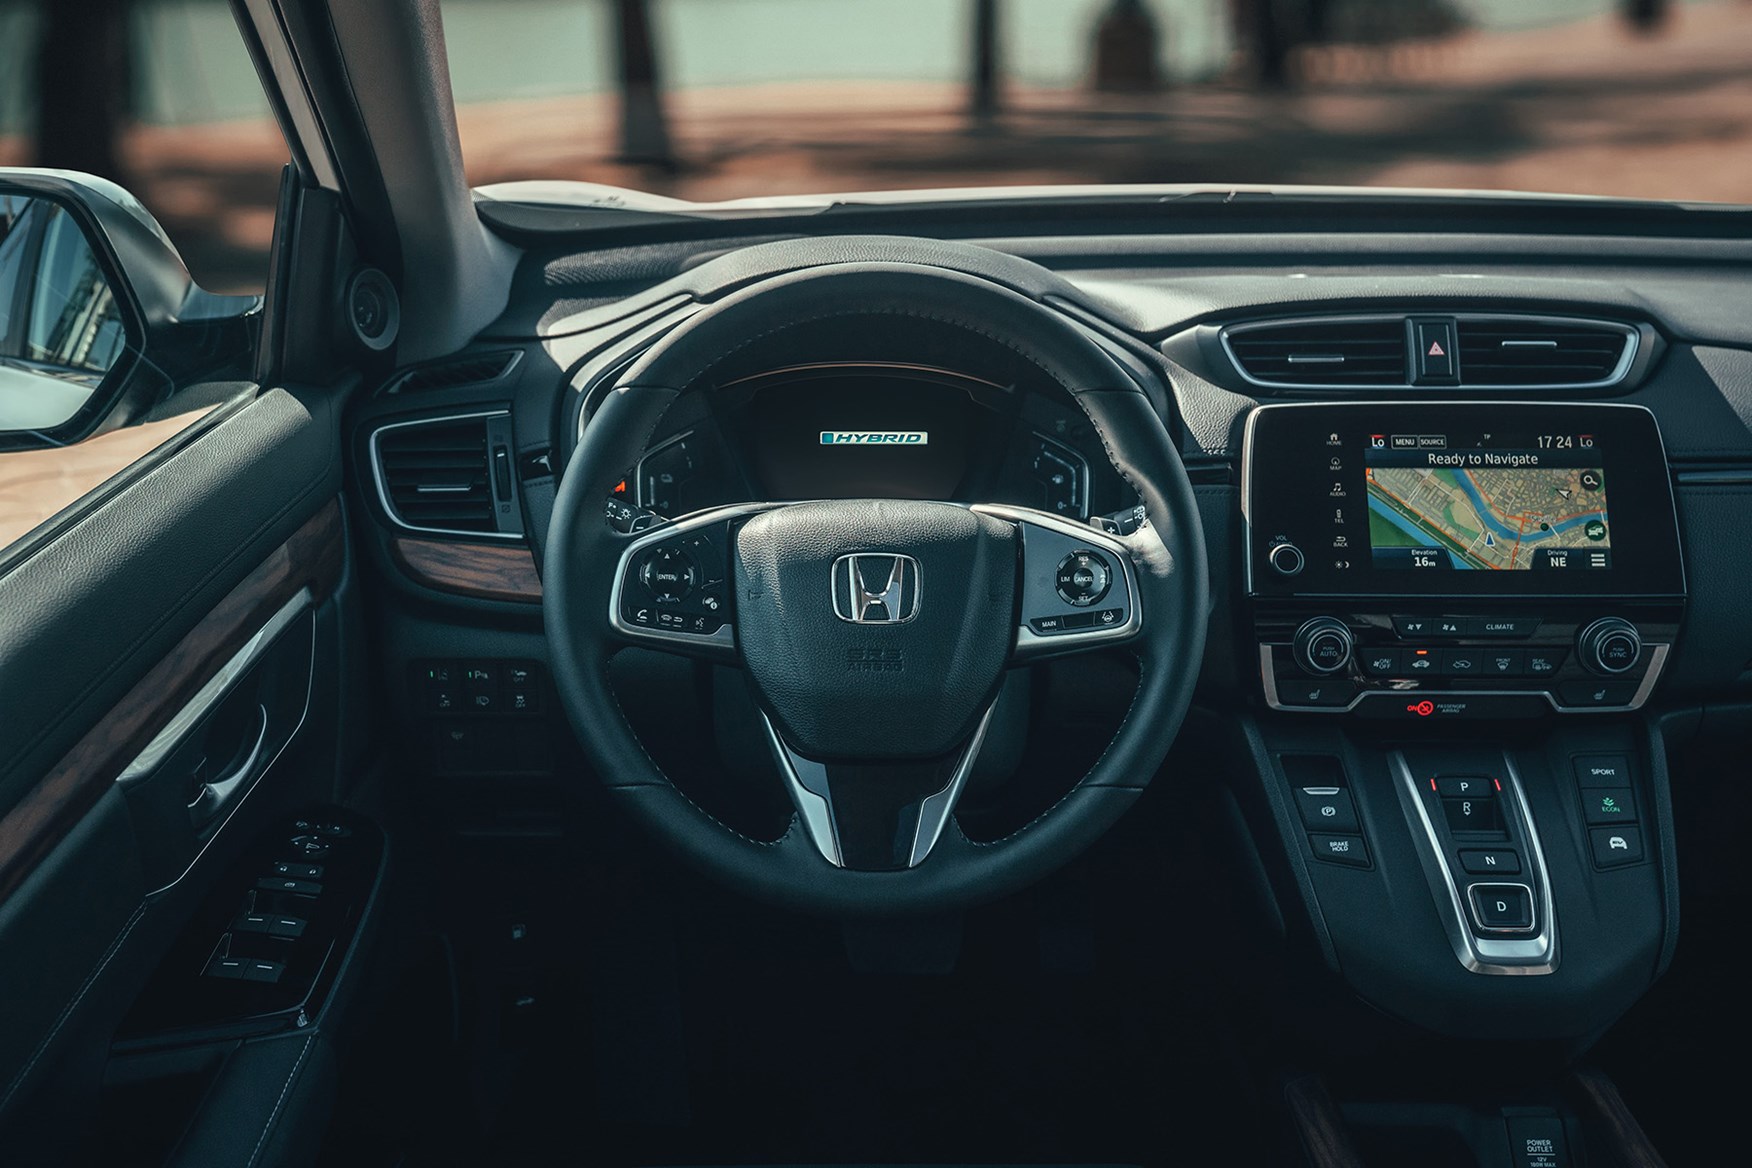 Hybrid power for Honda CR V means 120g km CO2 emissions 